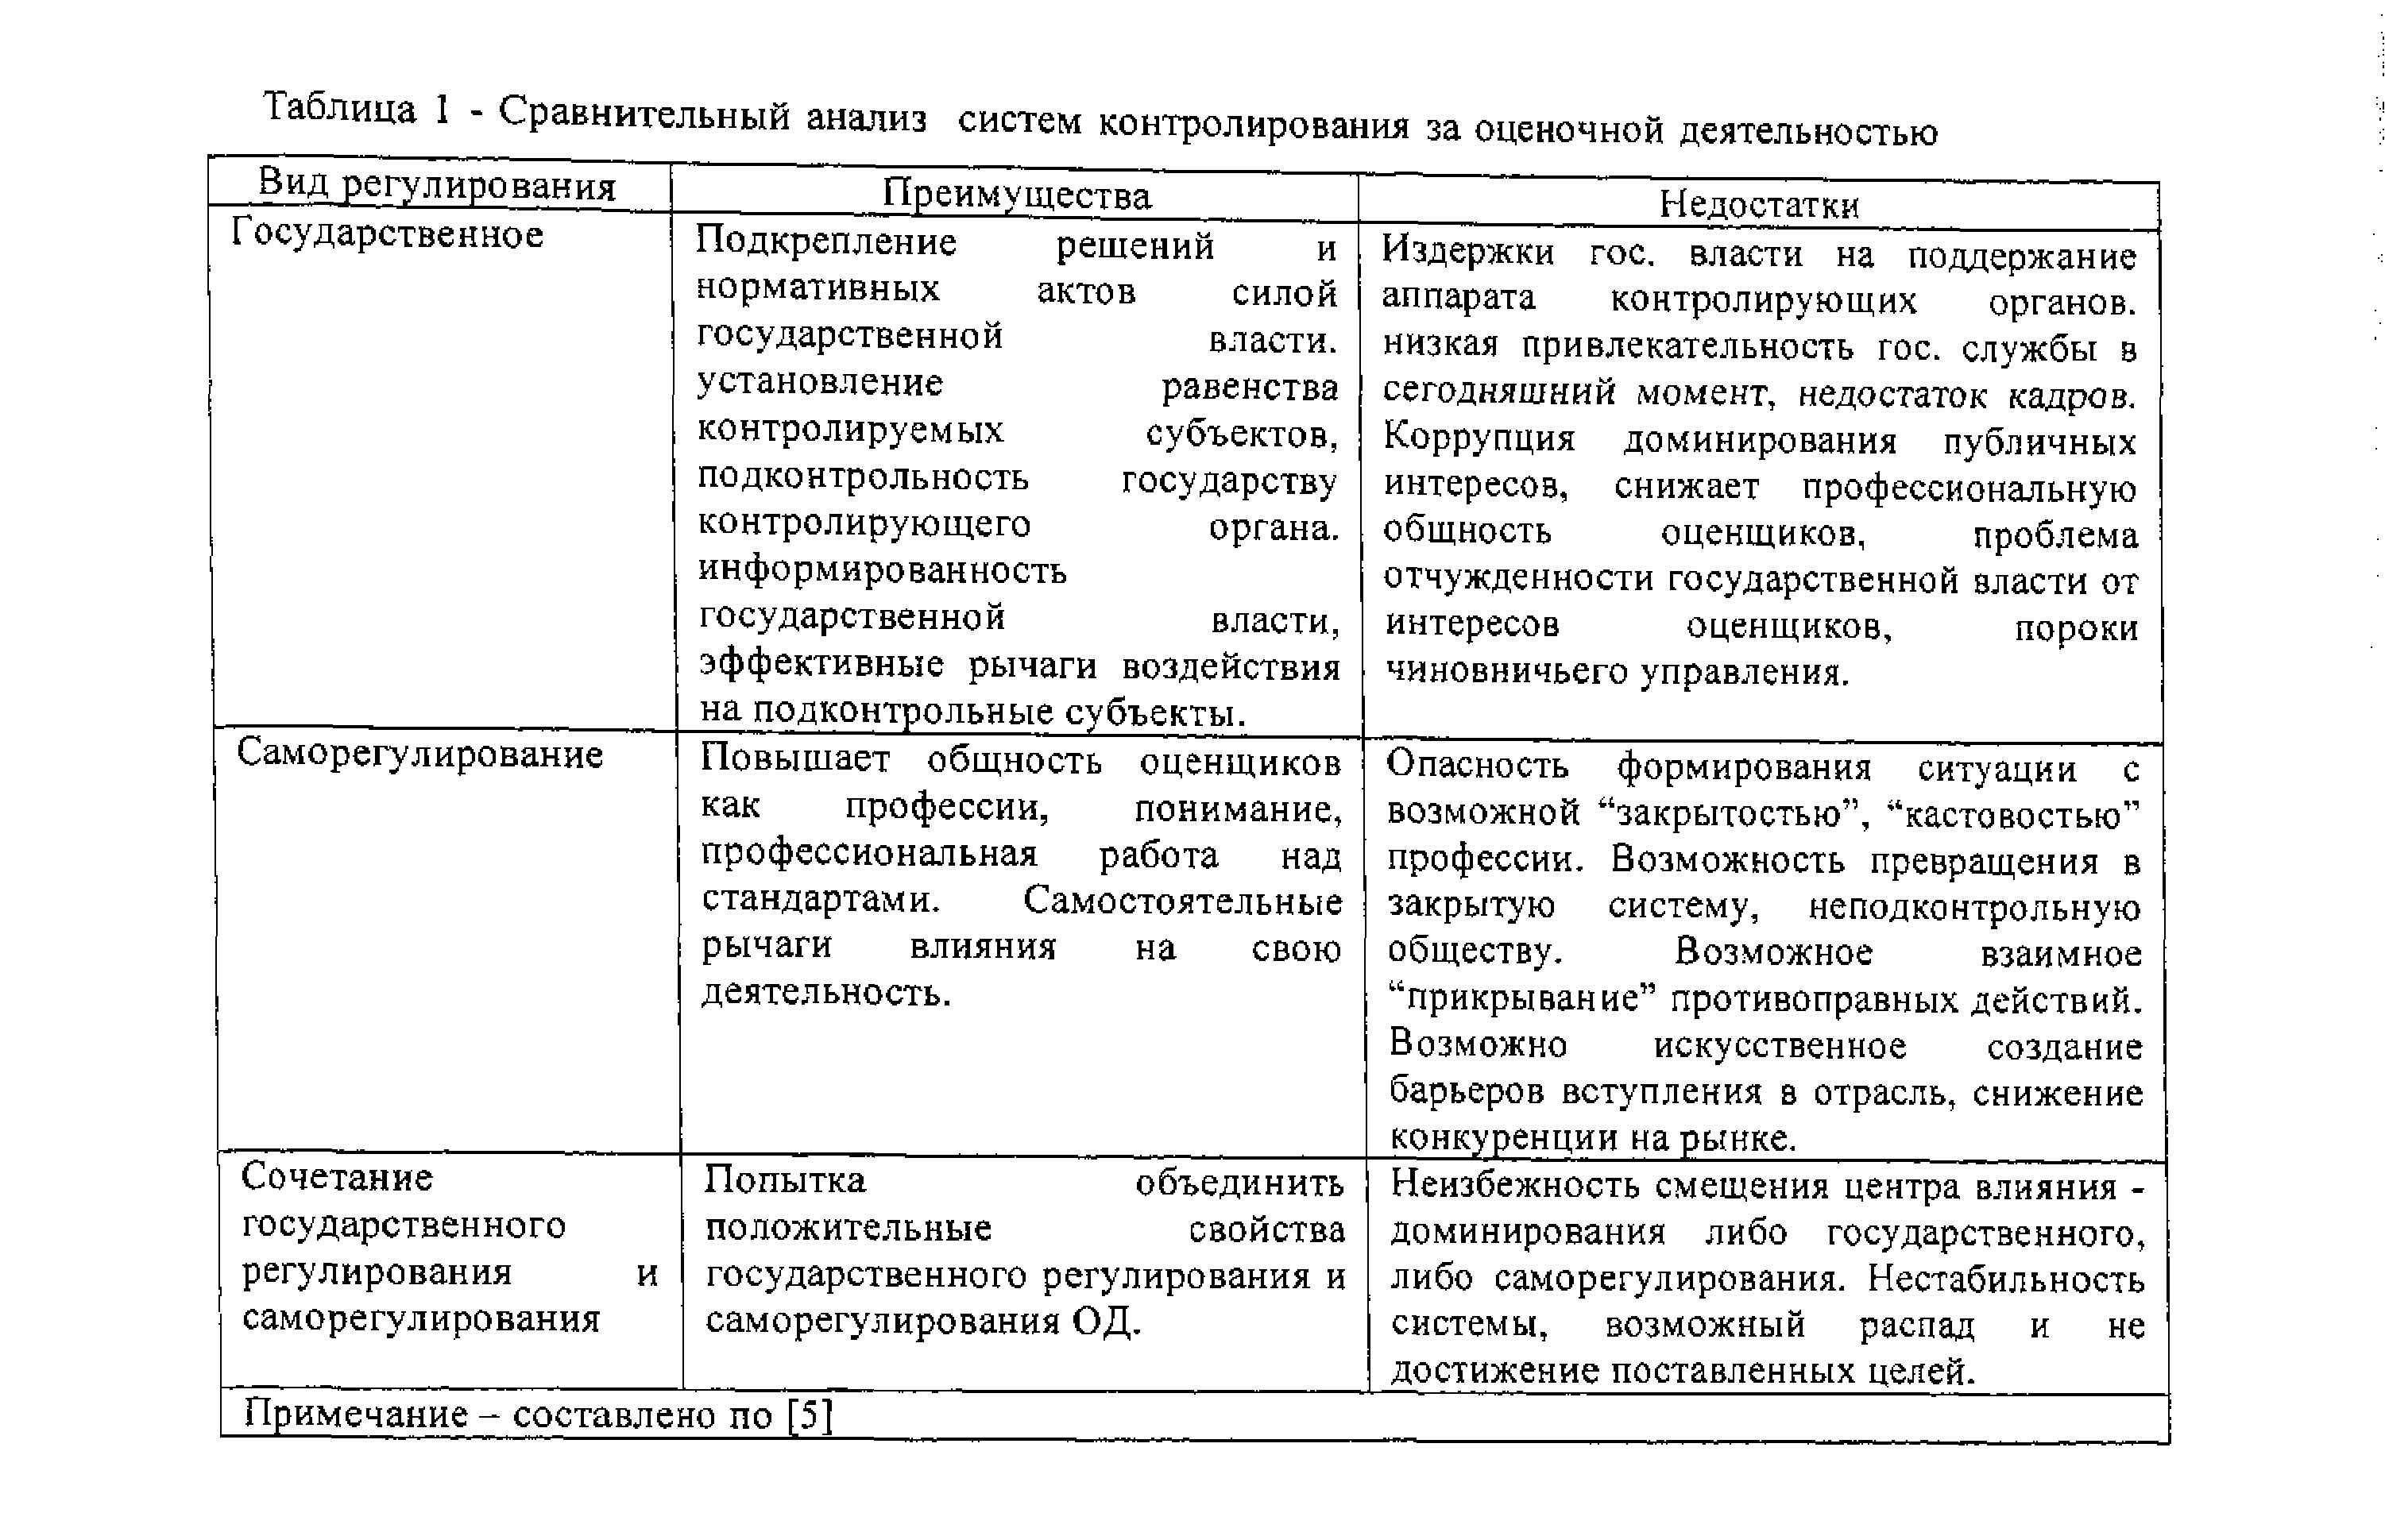 Развитие оценочной деятельности в современных условиях Казахстана